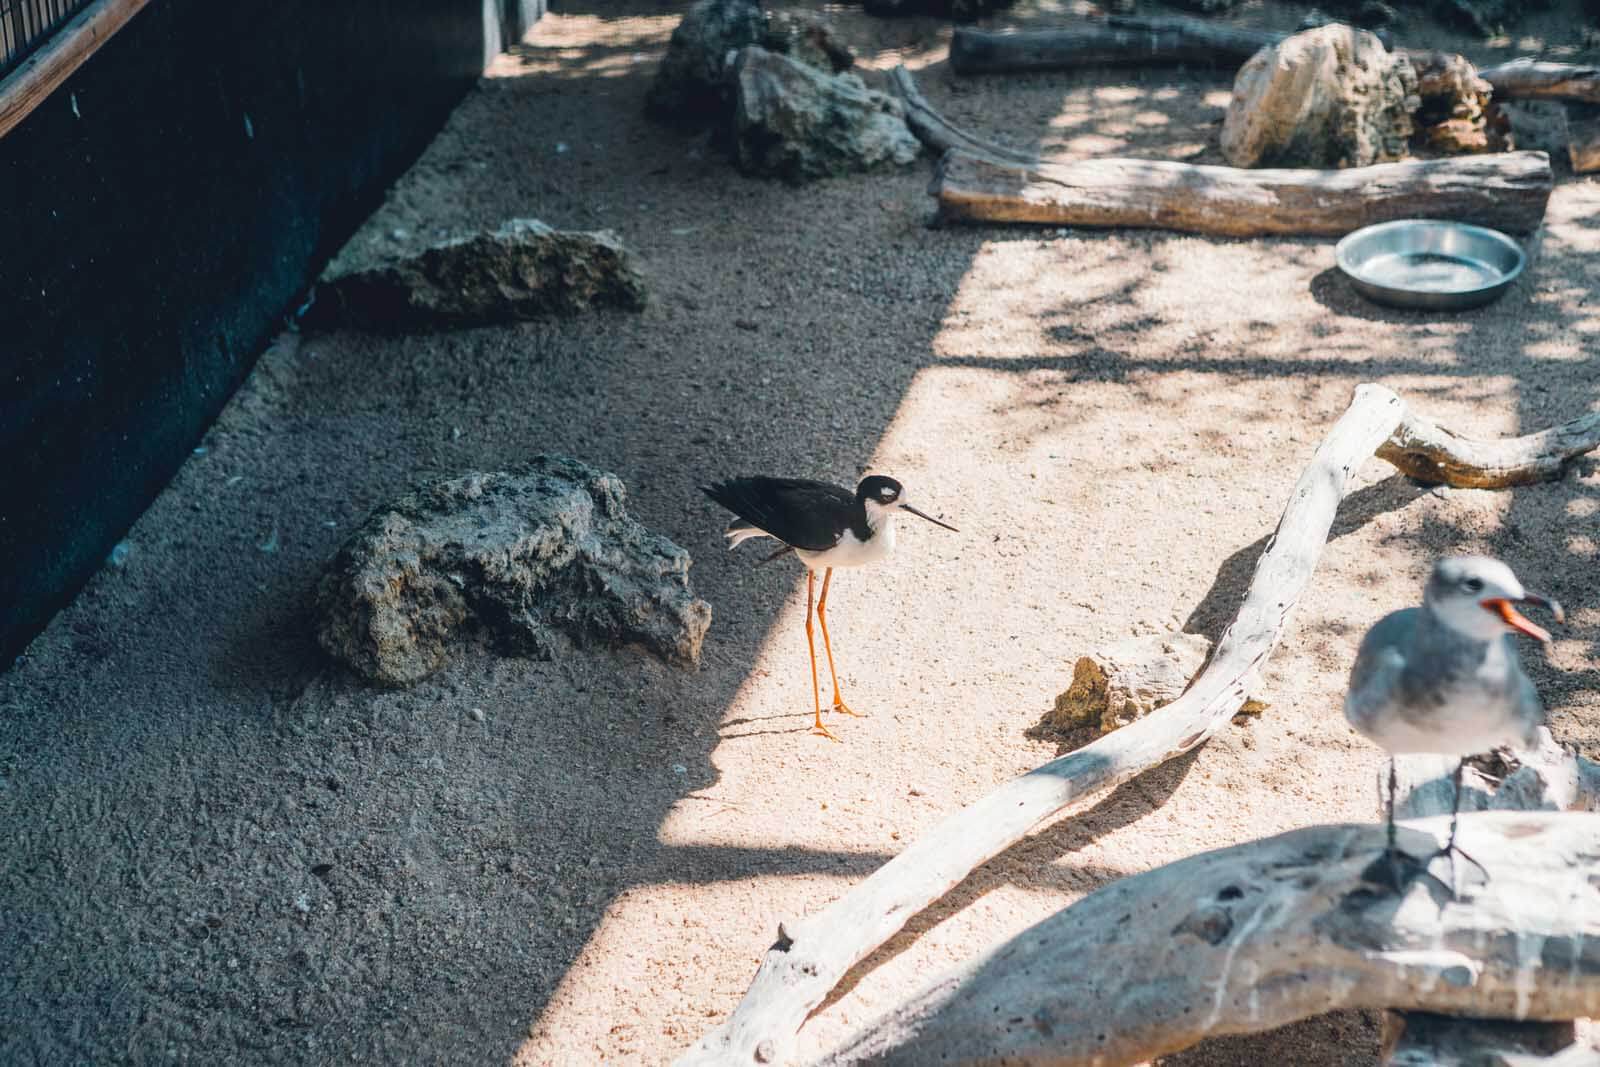 a little bird at the Florida Keys Wild Bird Center